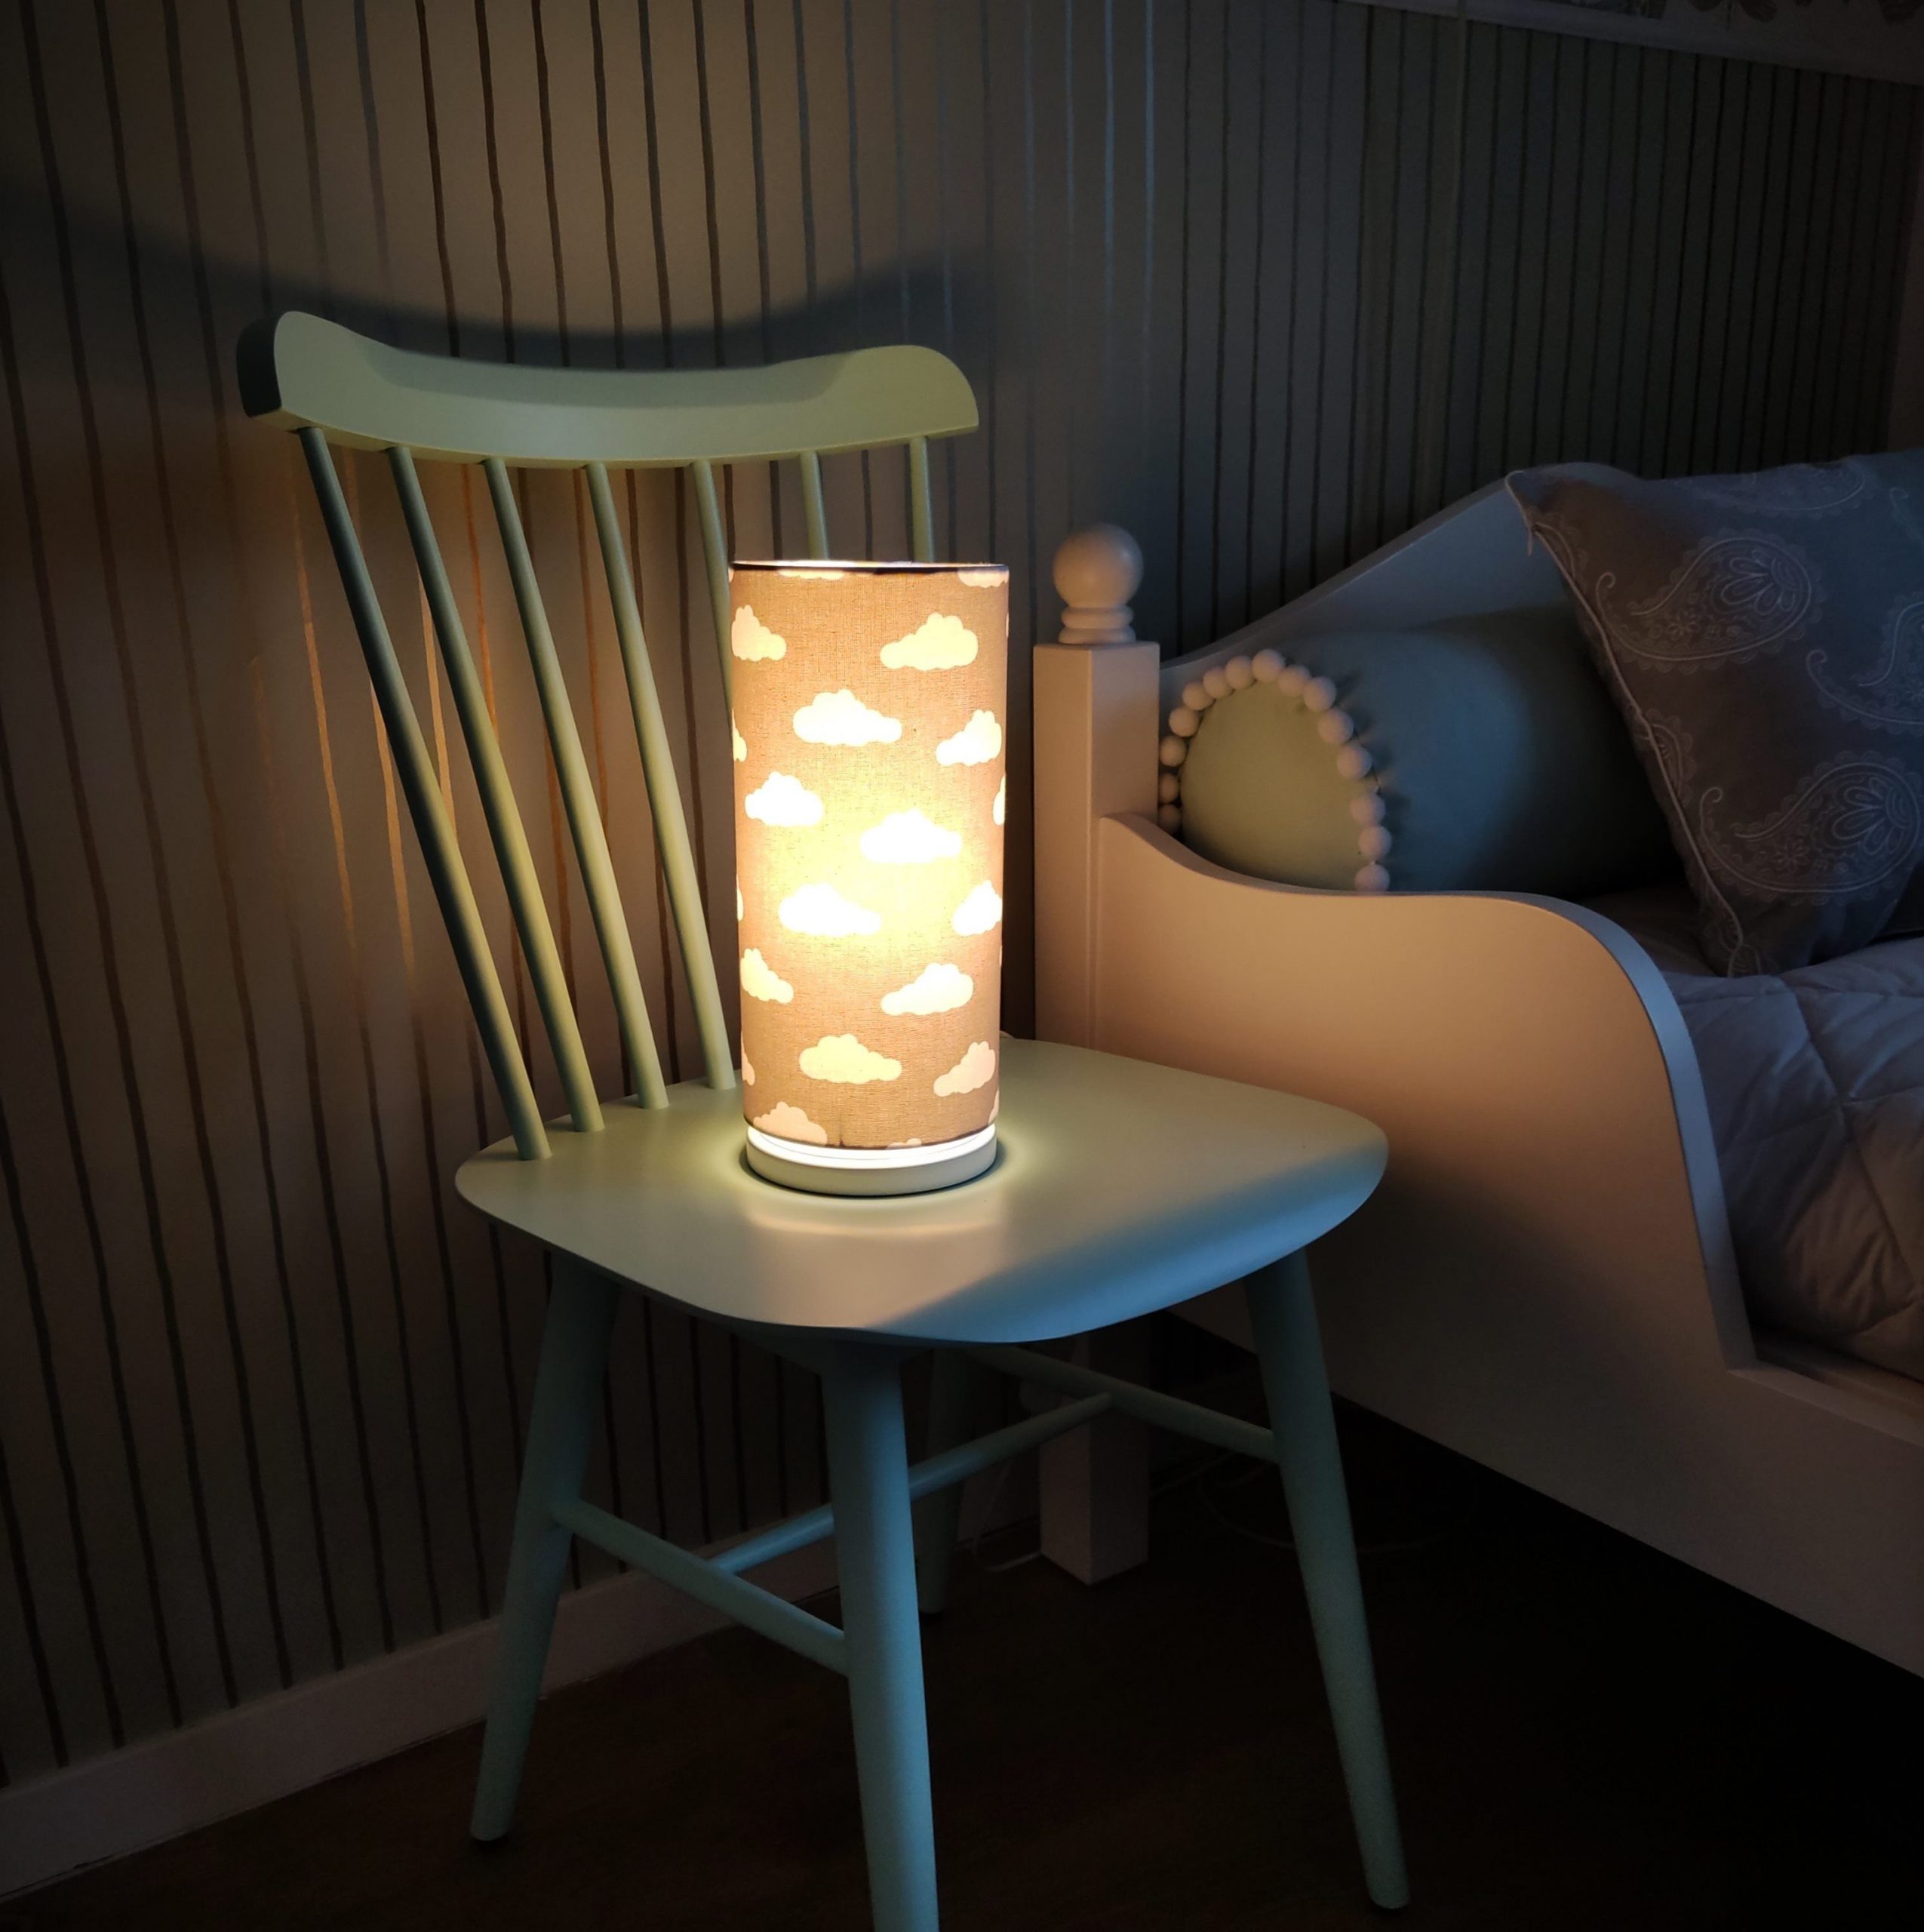 Lampka nocna do pokoju dziecięcego Chmurki - sklep internetowy Ryssa